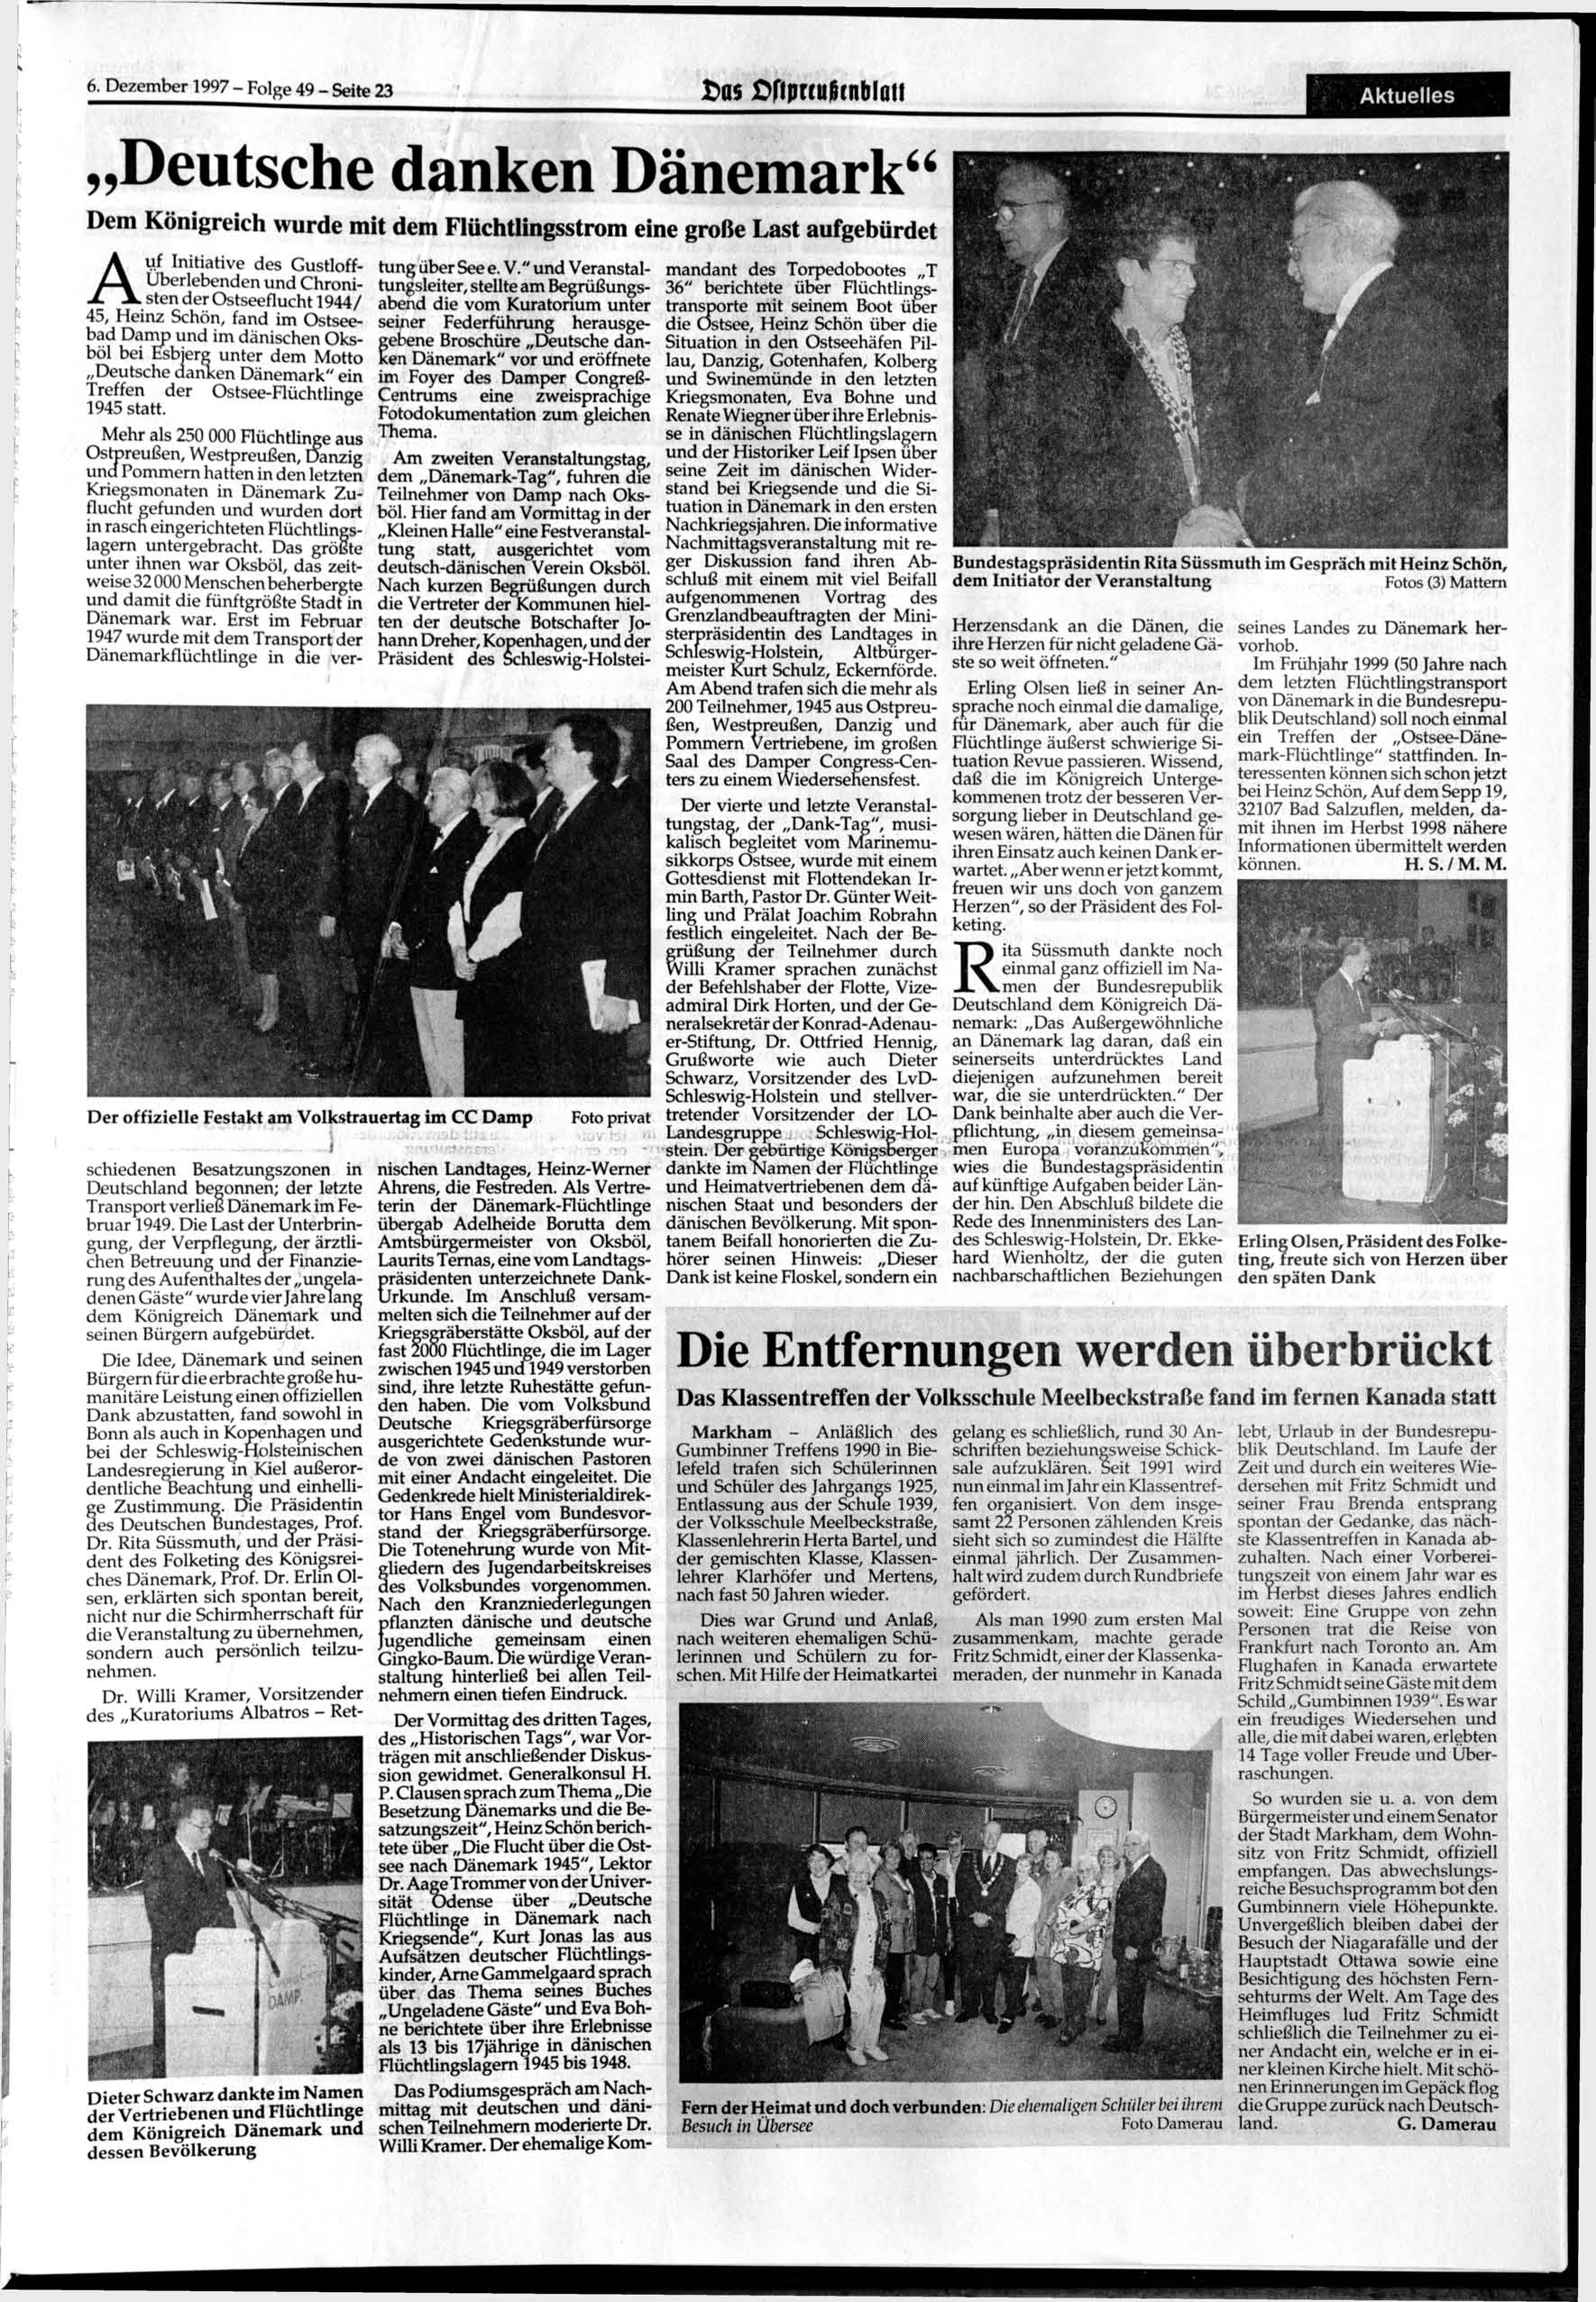 6. 1997- Folge 49 - Seite 23 >as SftprtuiHnblau Deutsche danken Dänemark" Dem Königreich wurde mit dem Flüchtlingsstrom eine große Last aufgebürdet Auf Initiative des Gustloff- Uberlebenden und